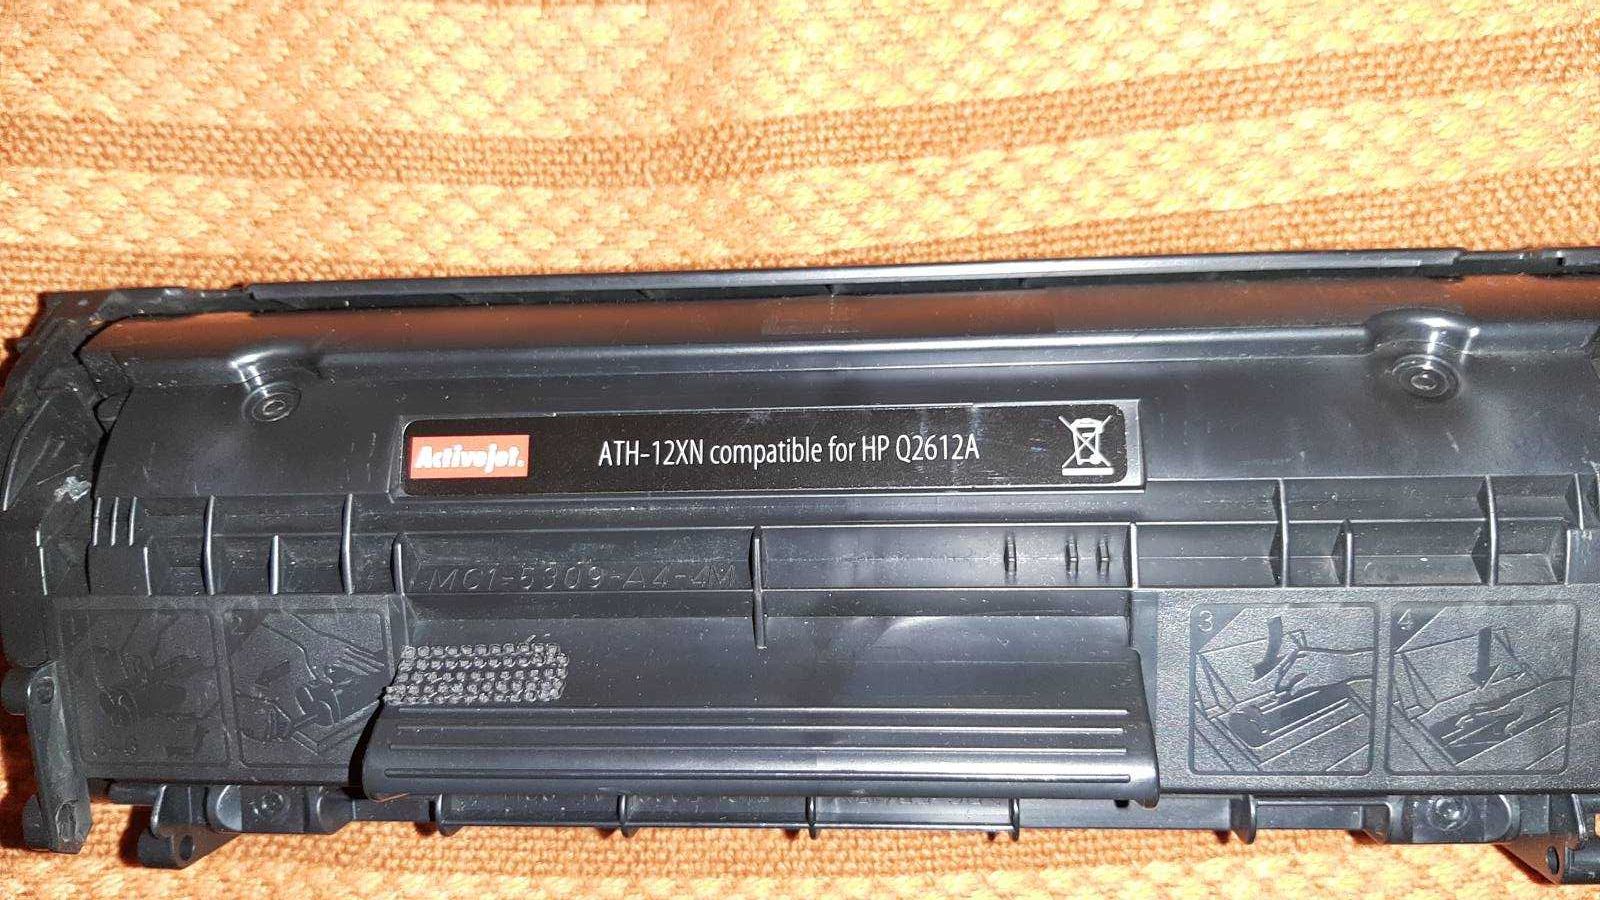 Лазерные картриджи  ATH-12XN, Brother LC123 и кабели для принтера.